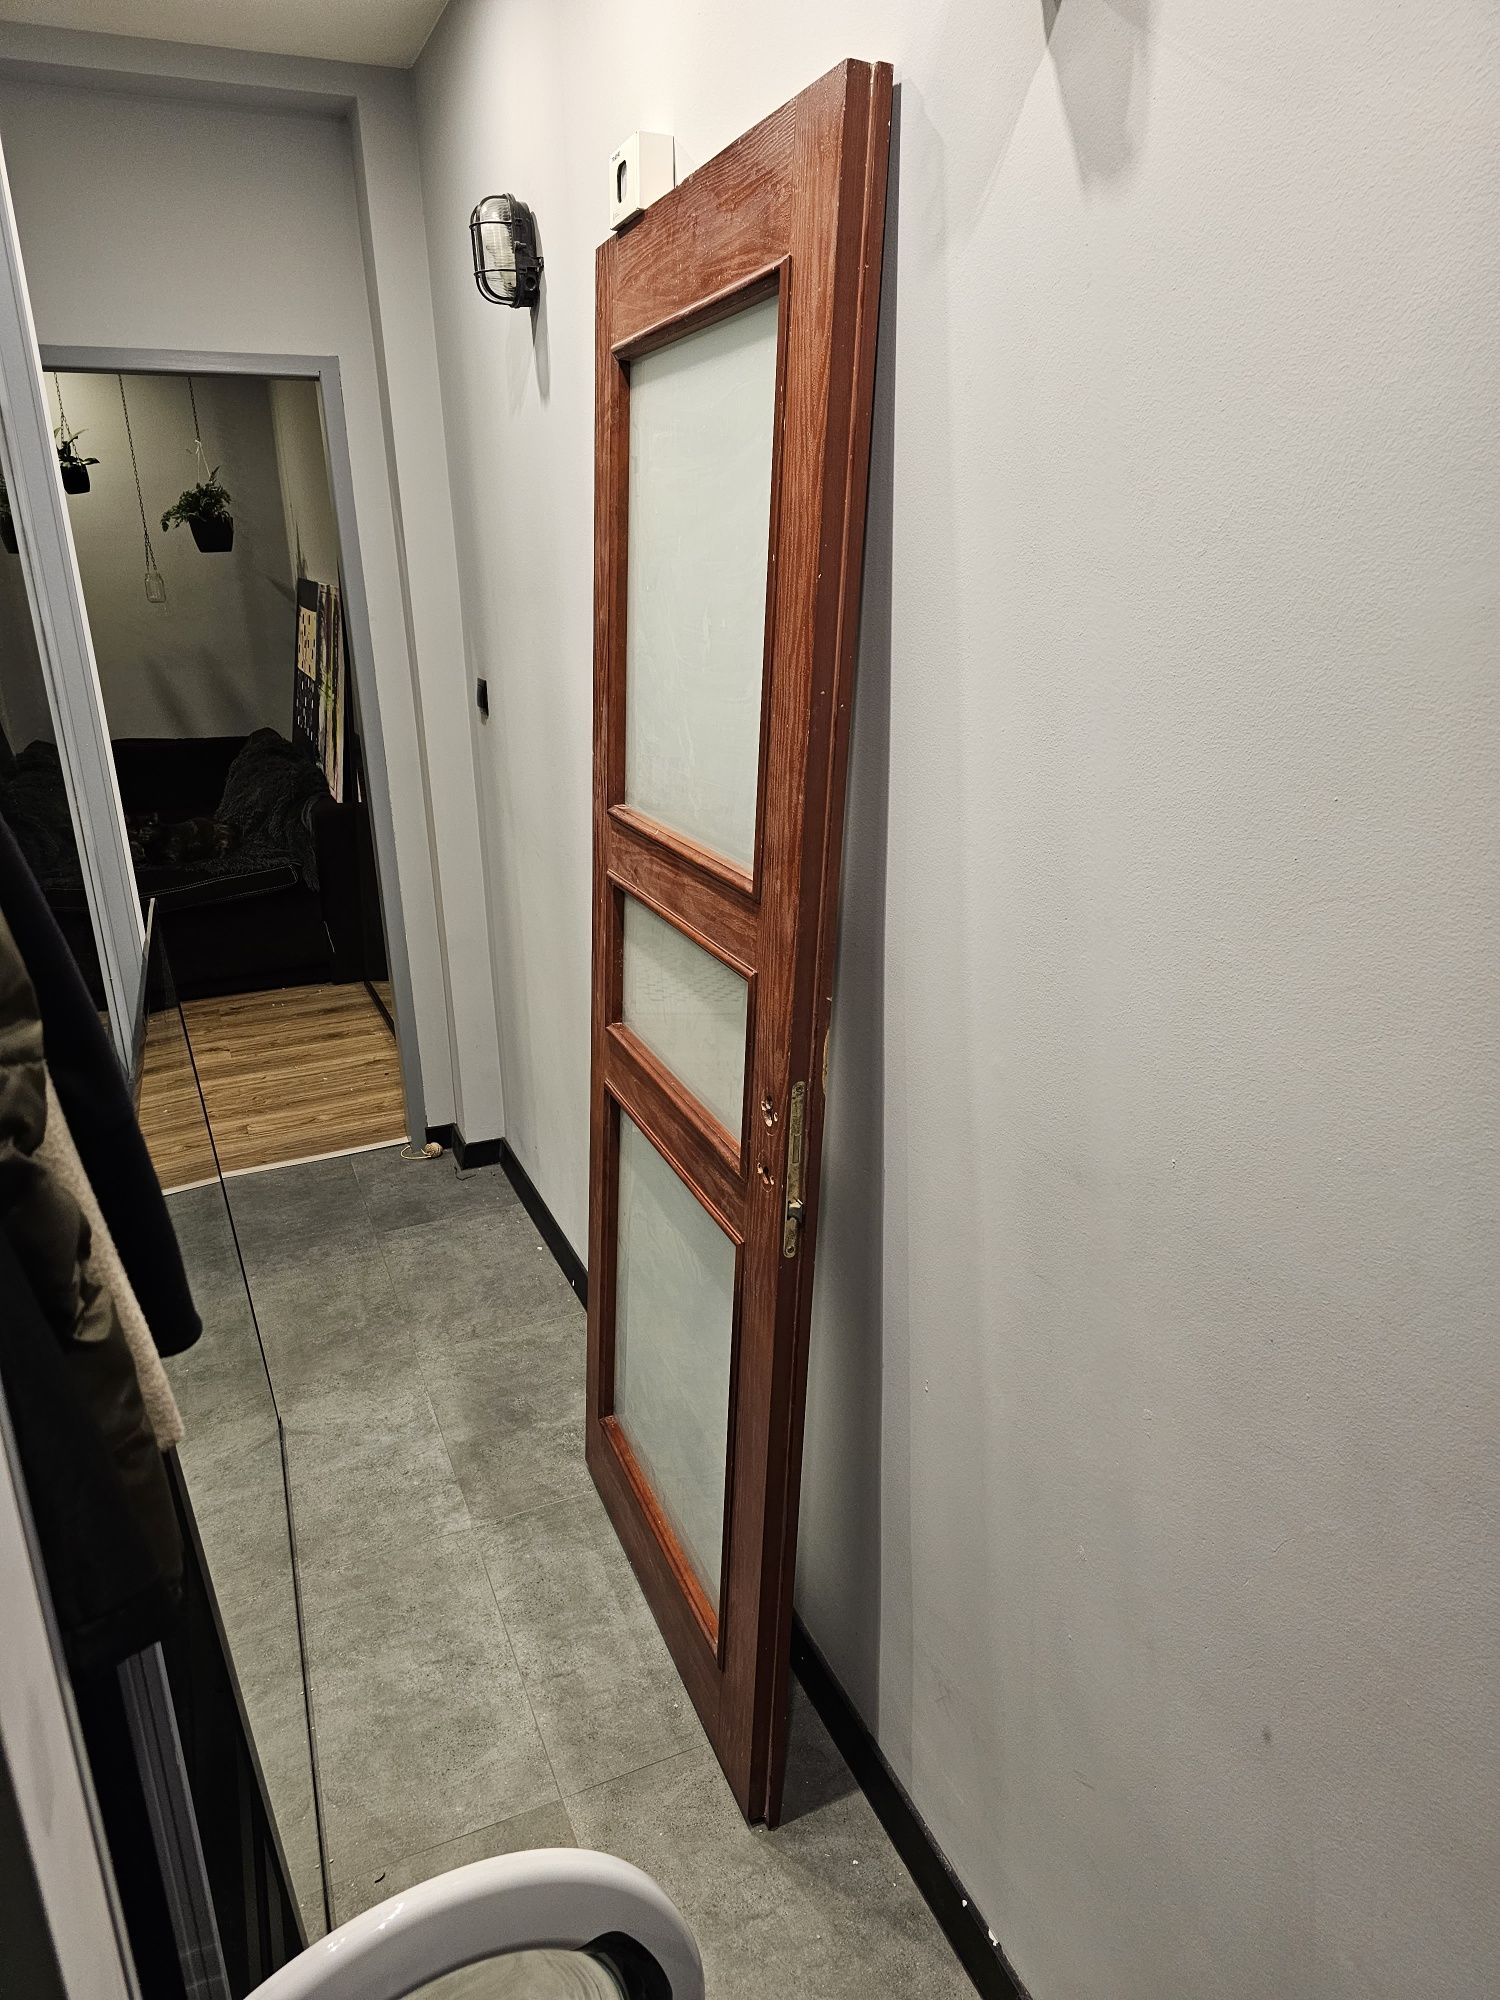 Drzwi drewniane wewnętrzne 80cm